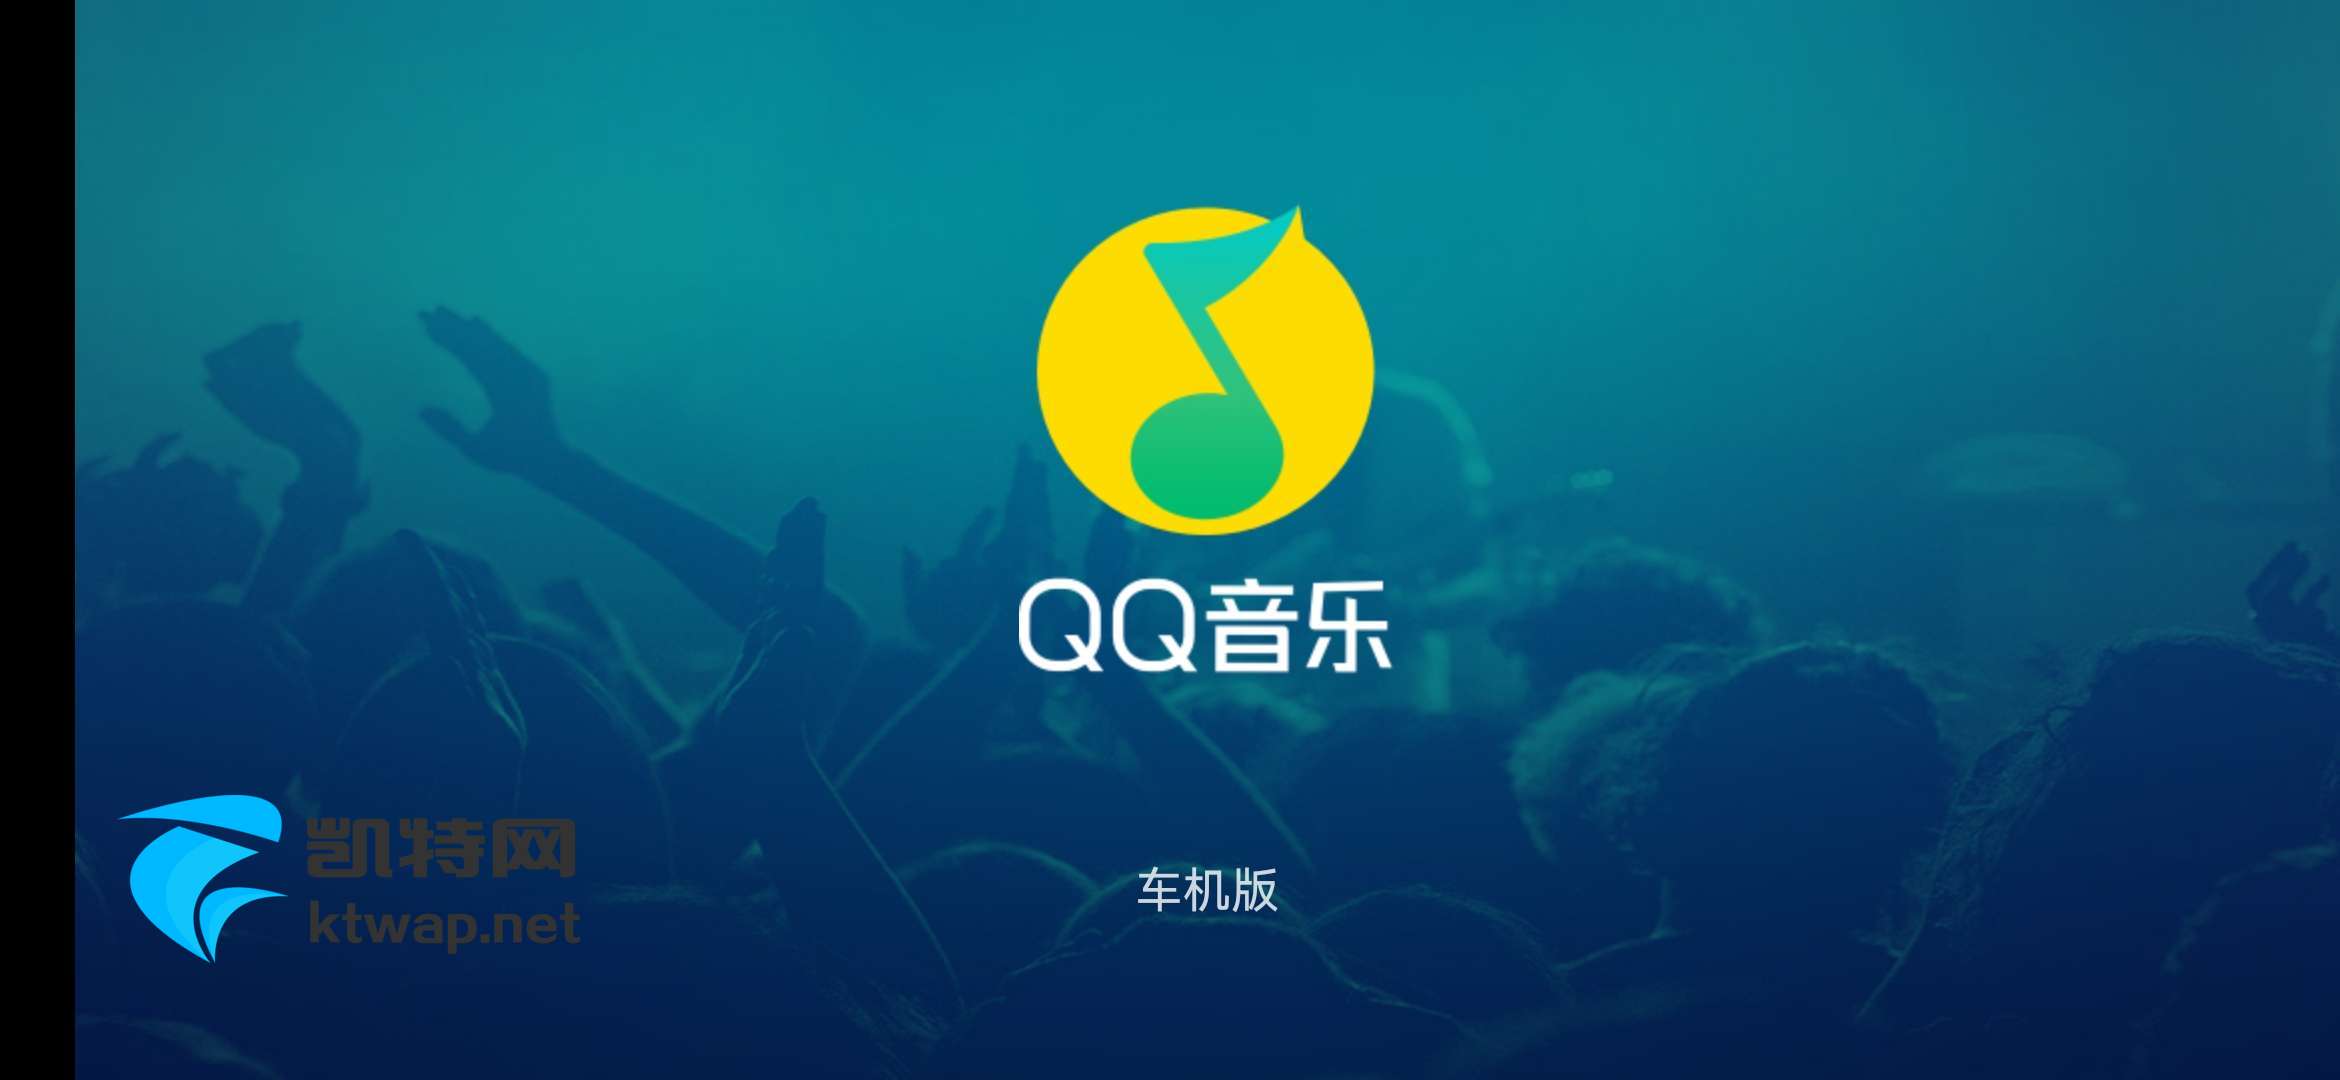 【资源分享】QQ音乐车机 v1.9.9.3 专为智能汽车打造